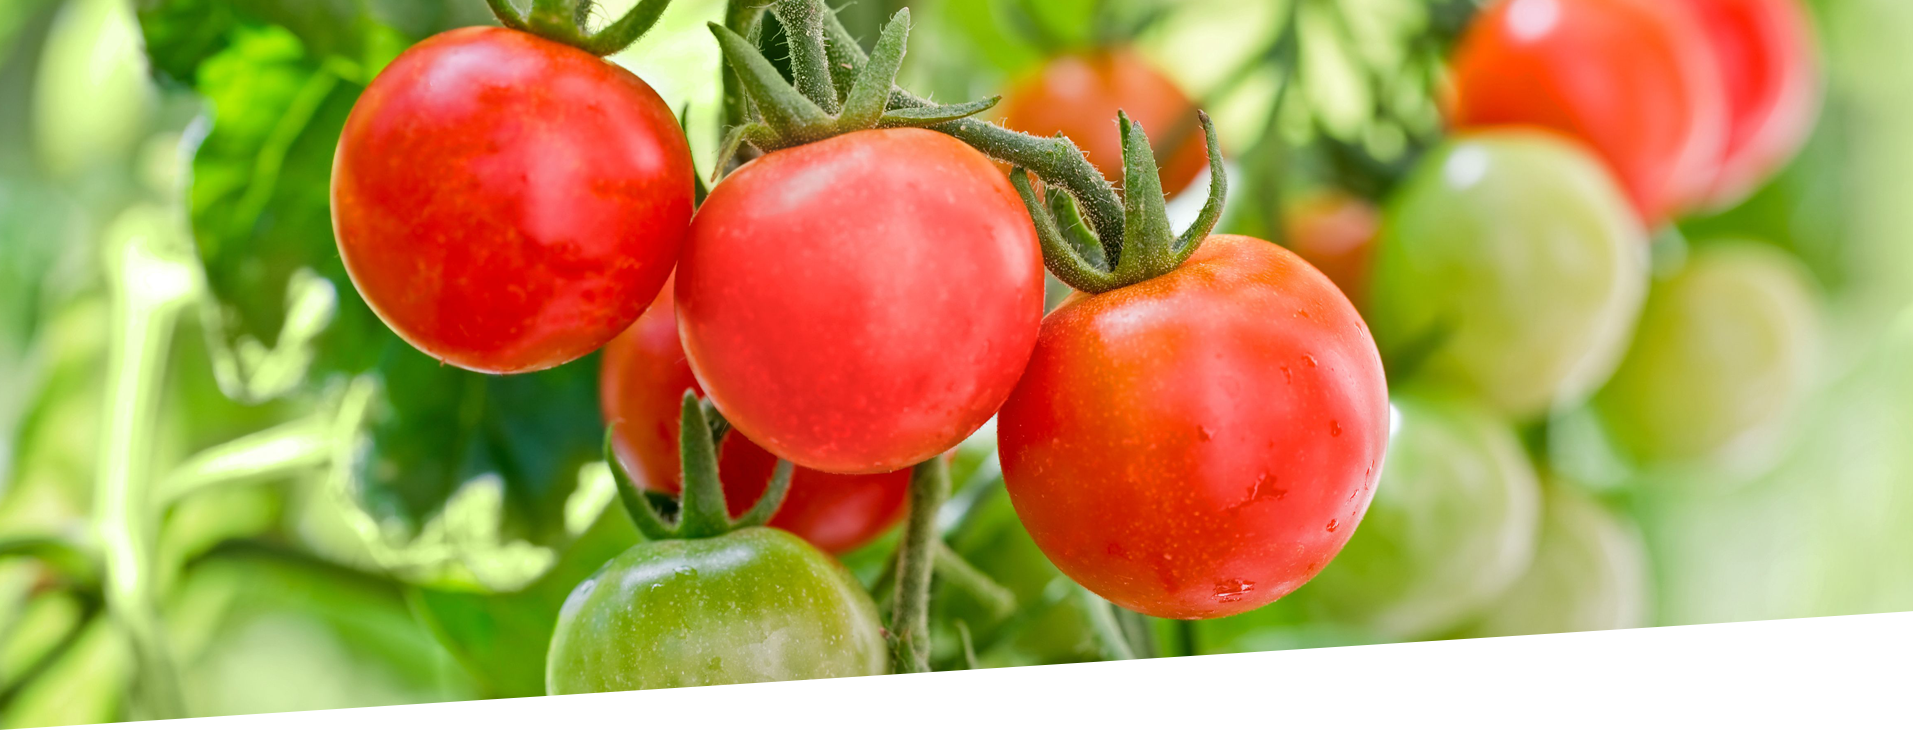 fresh Cherry tomatoes